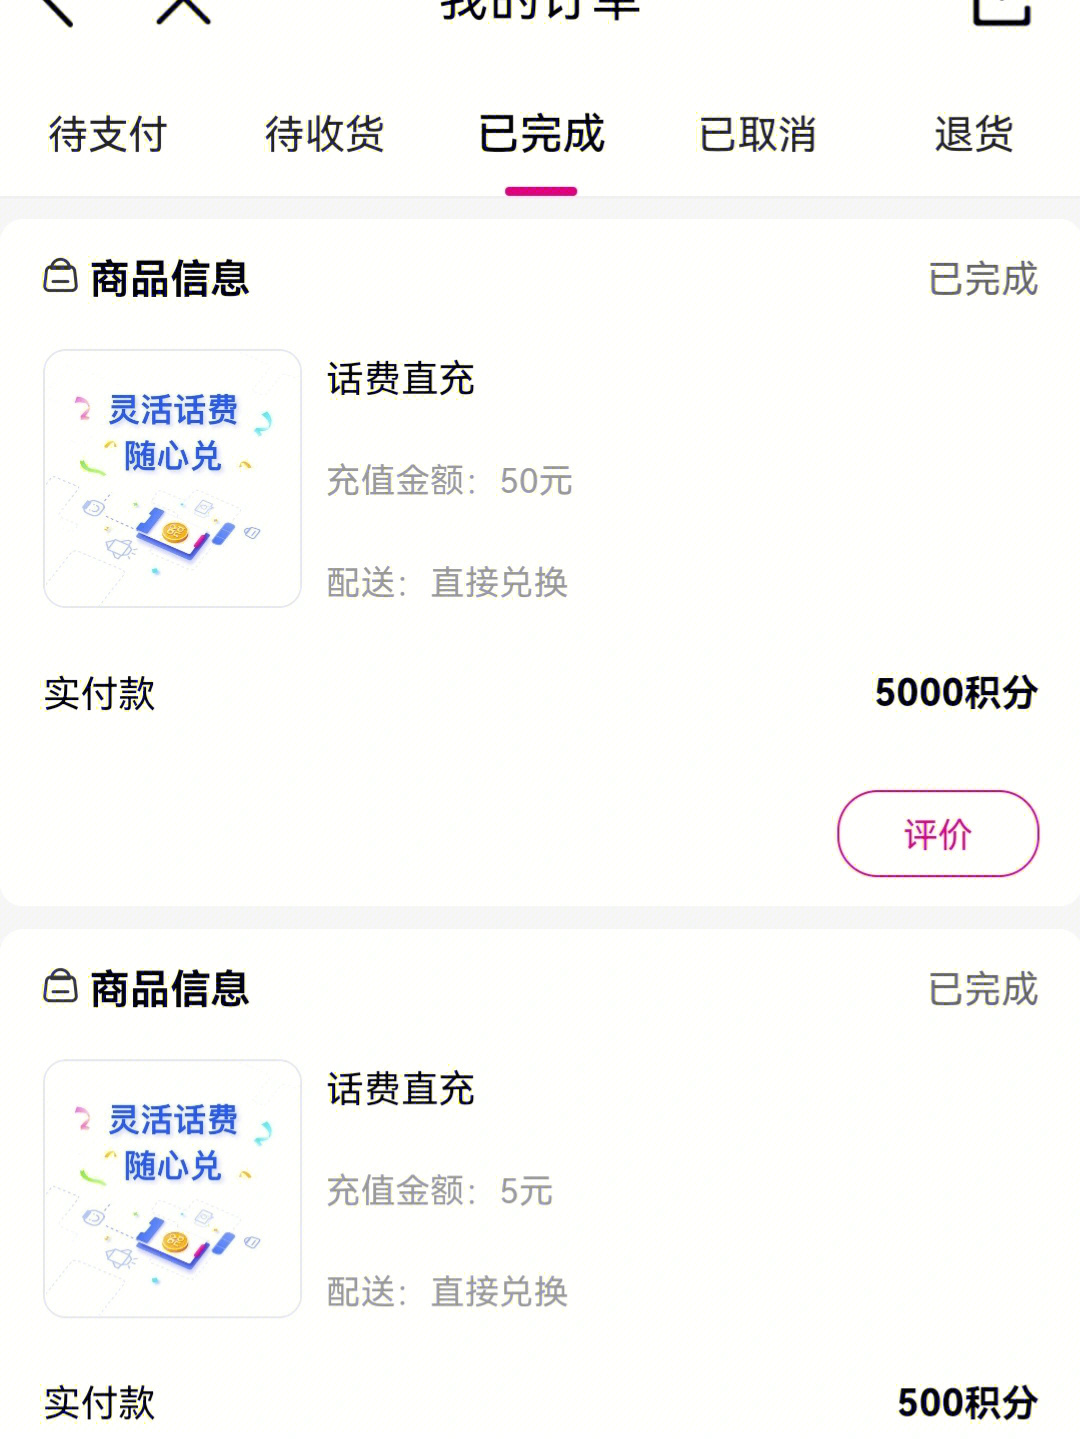 有两种方法:7315中国移动app里面,登录→我的→积分→话费兑换